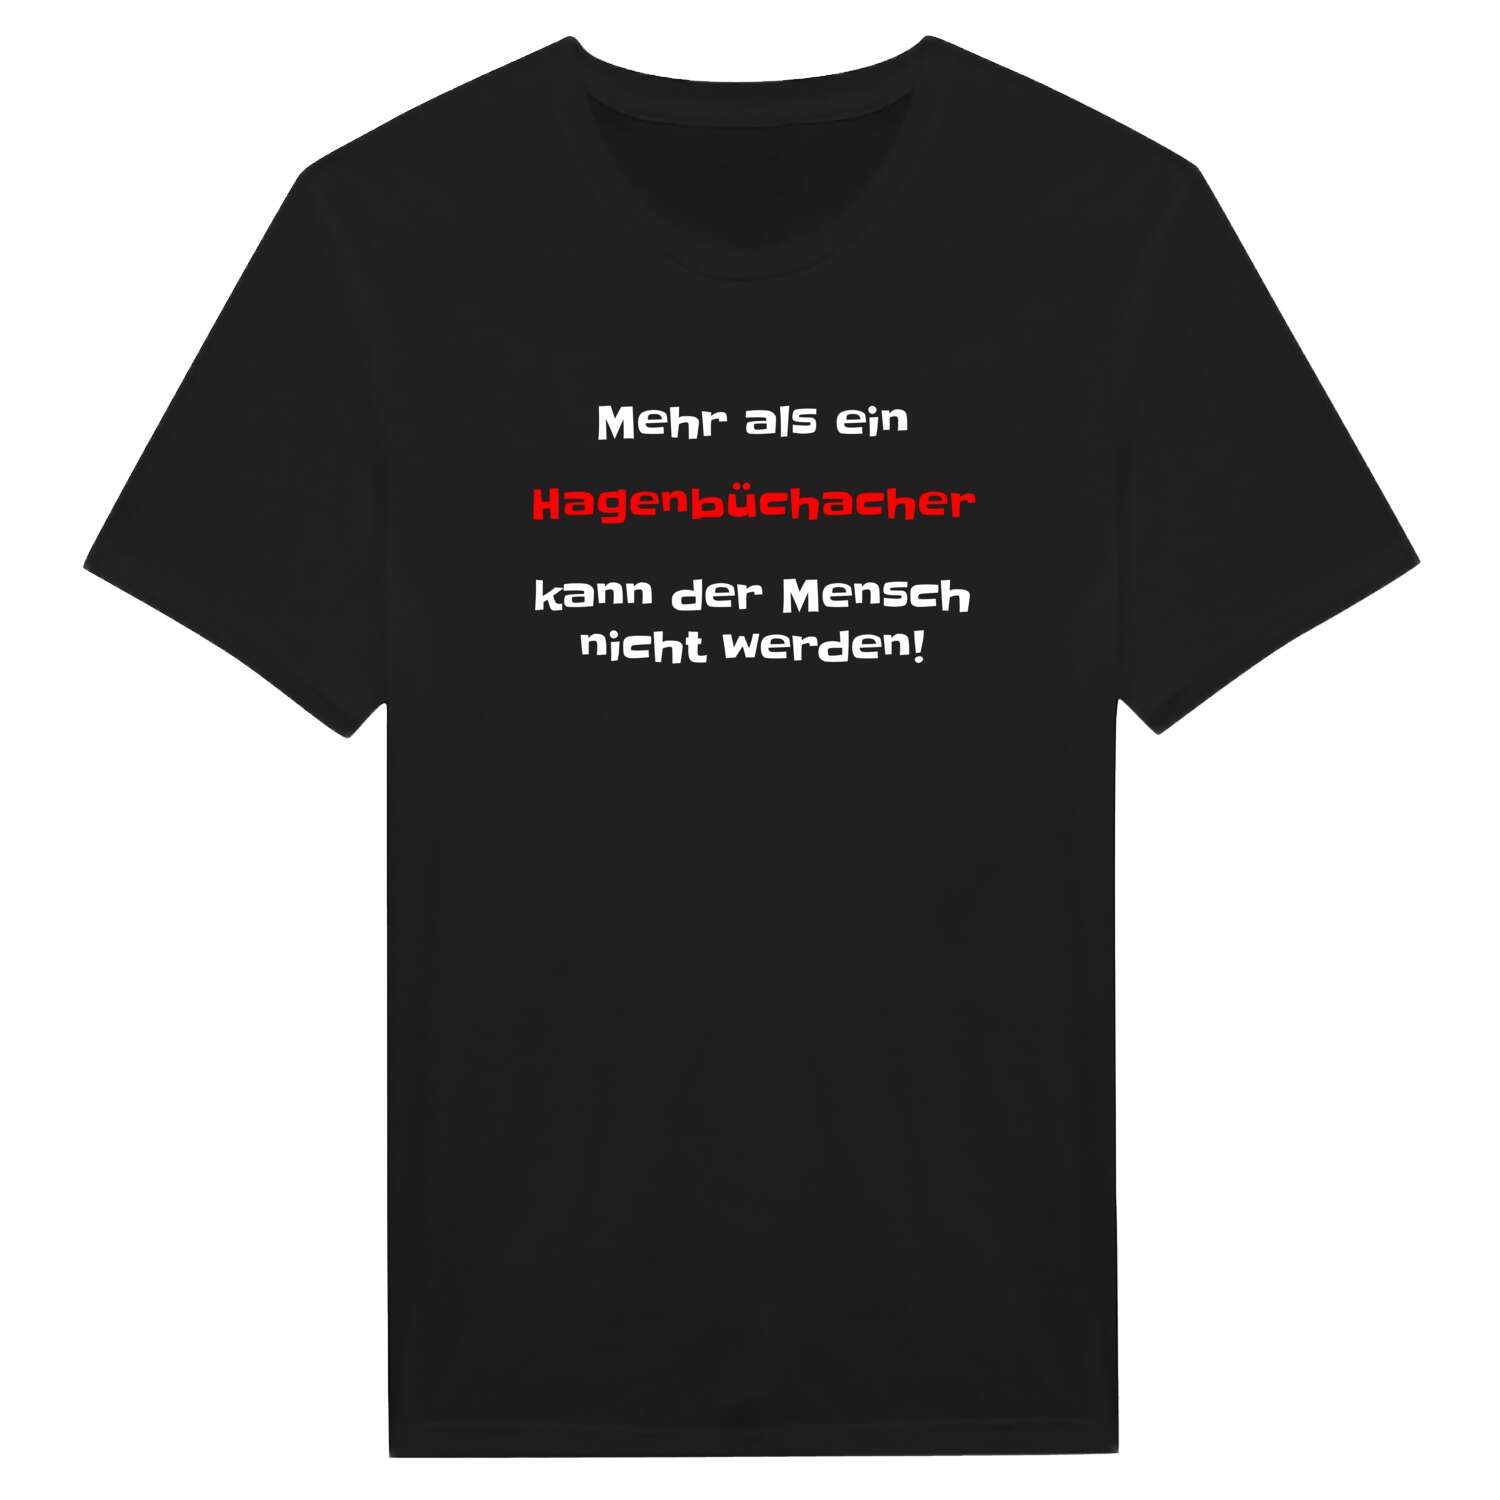 Hagenbüchach T-Shirt »Mehr als ein«